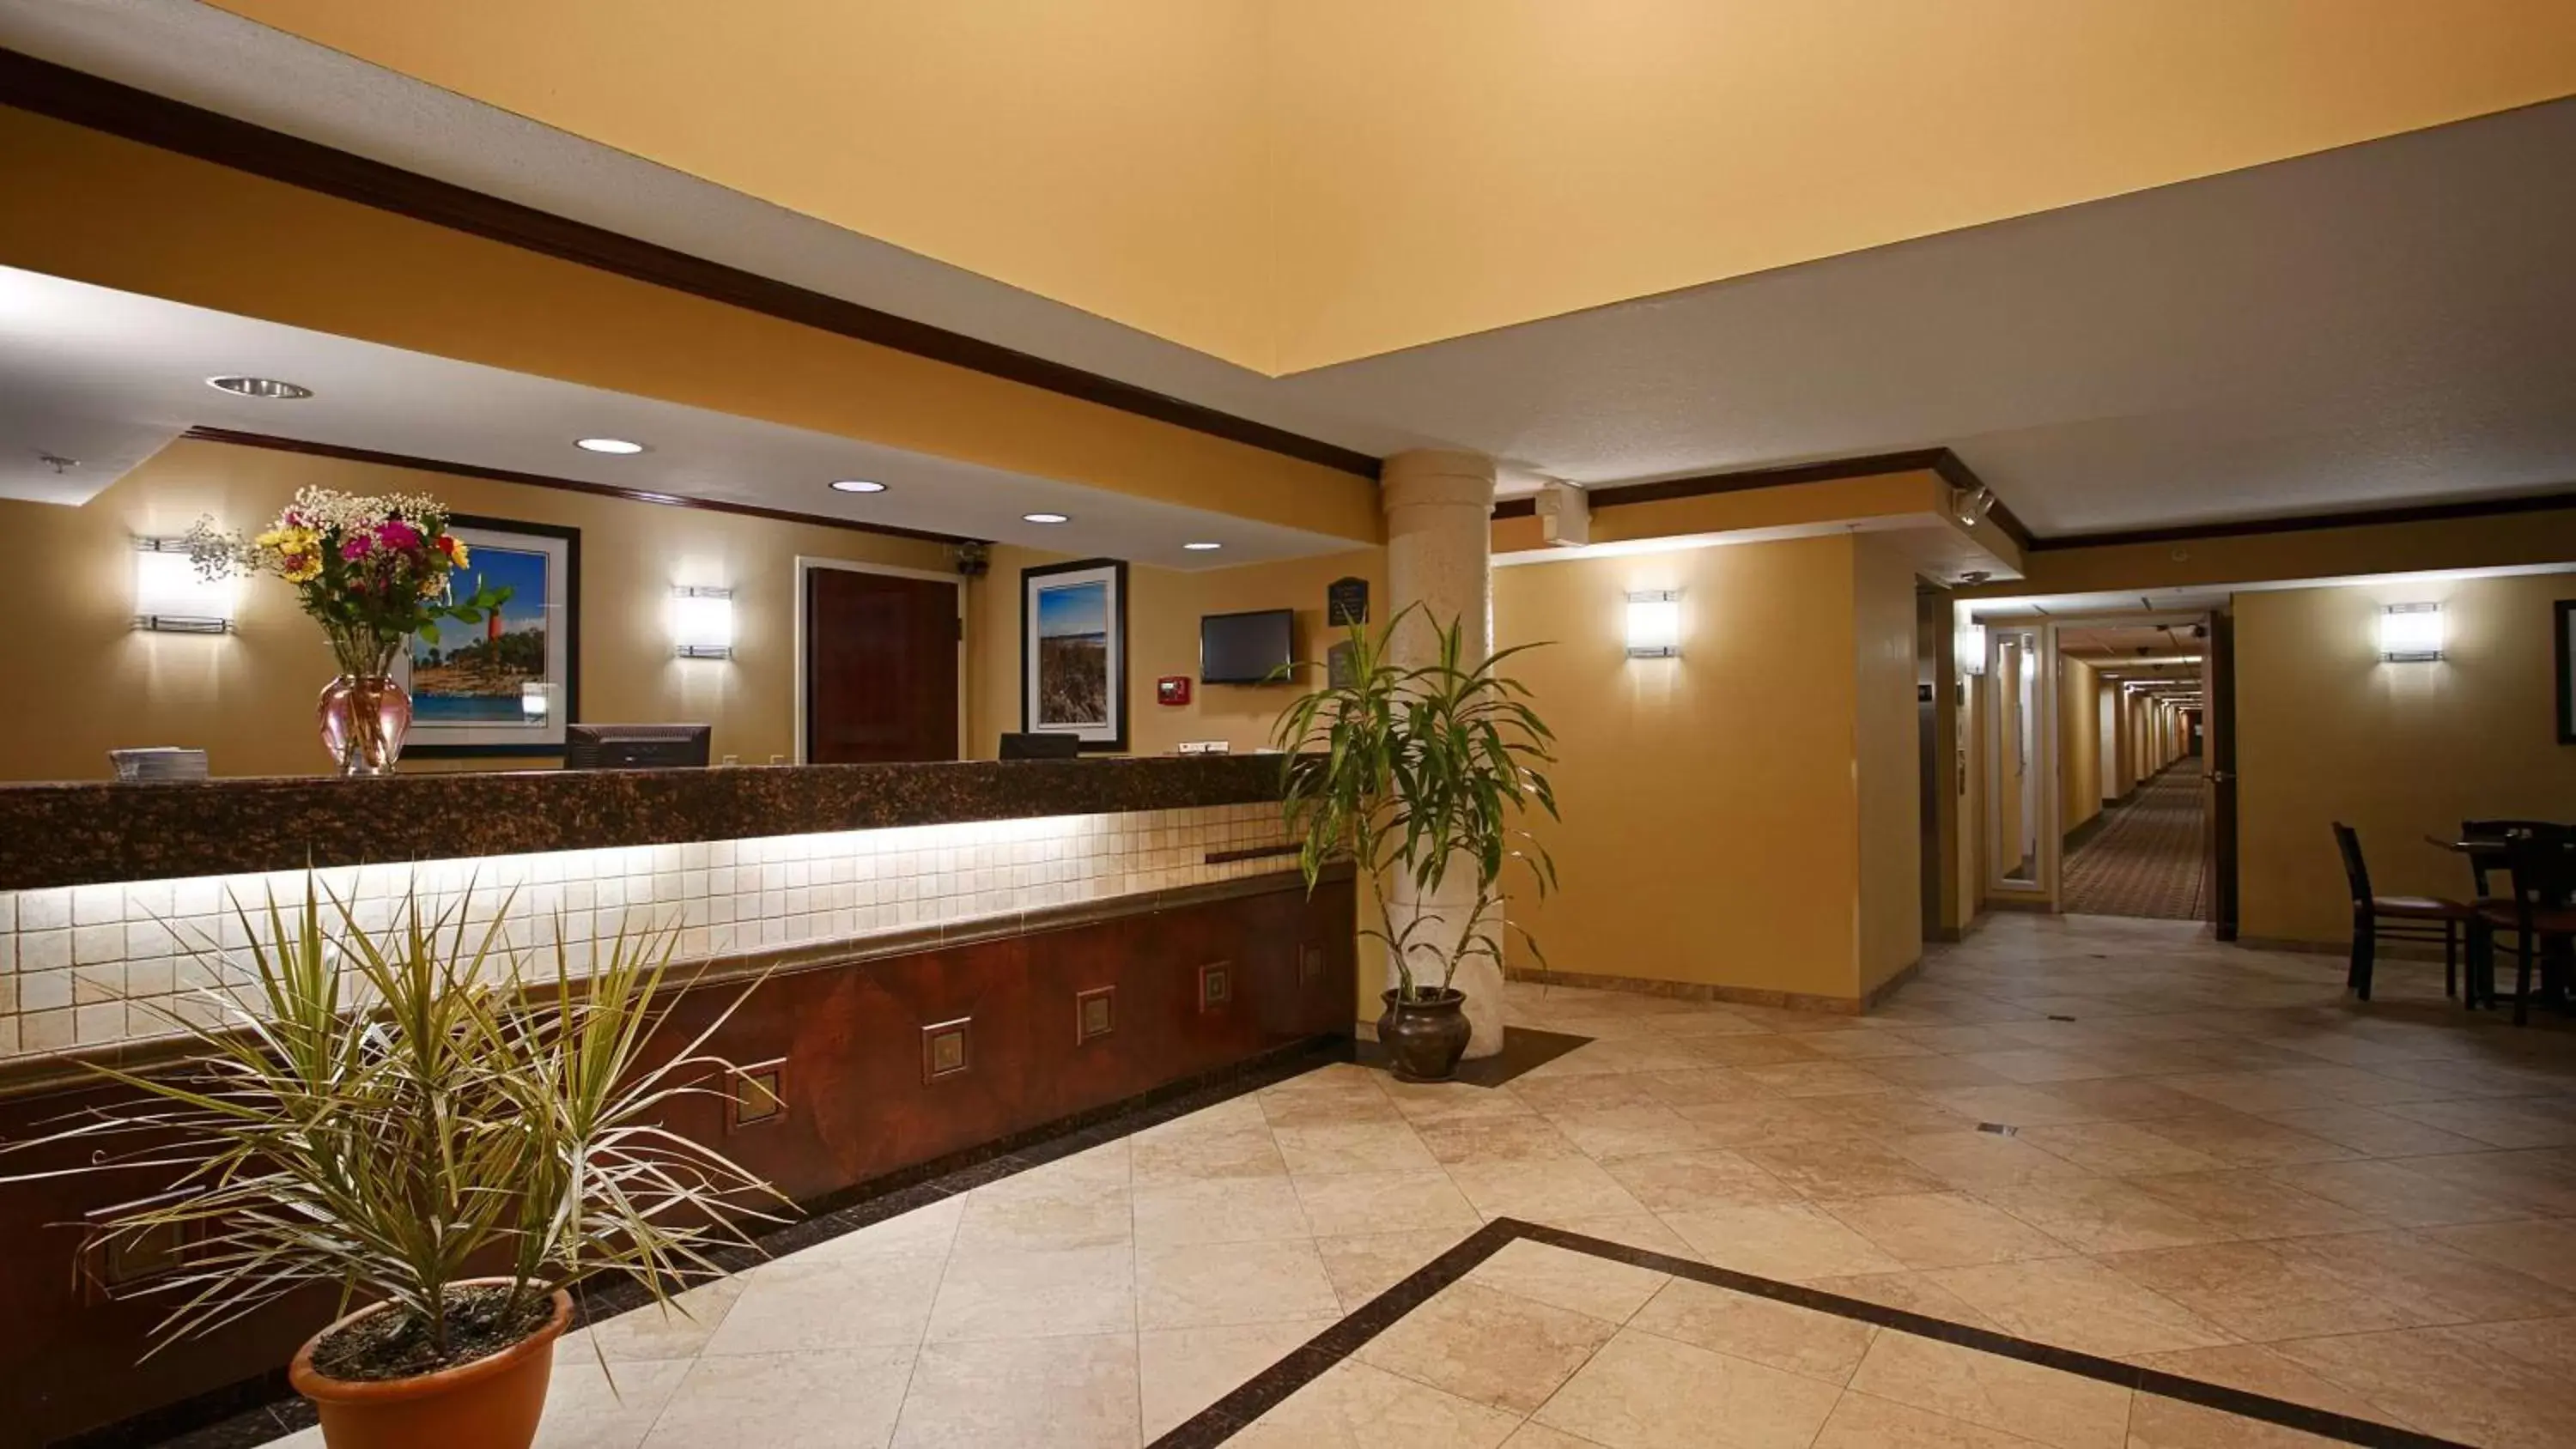 Lobby or reception, Lobby/Reception in Best Western Intracoastal Inn